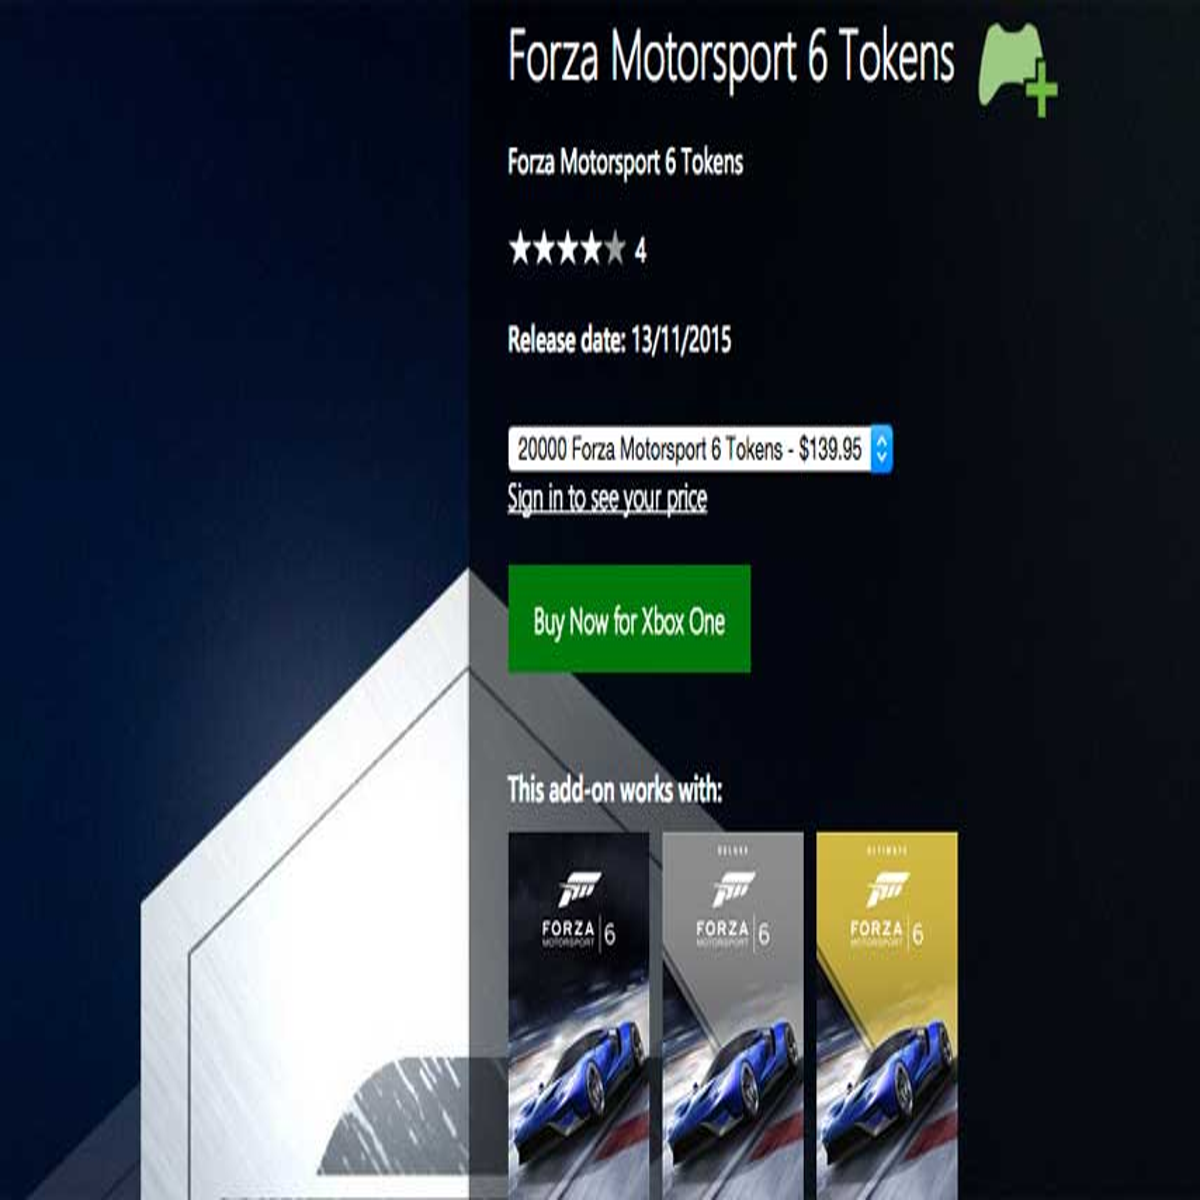 Forza 6 [Xbox One] vs Forza 6: Apex [PC Beta] - Graphics Comparison 